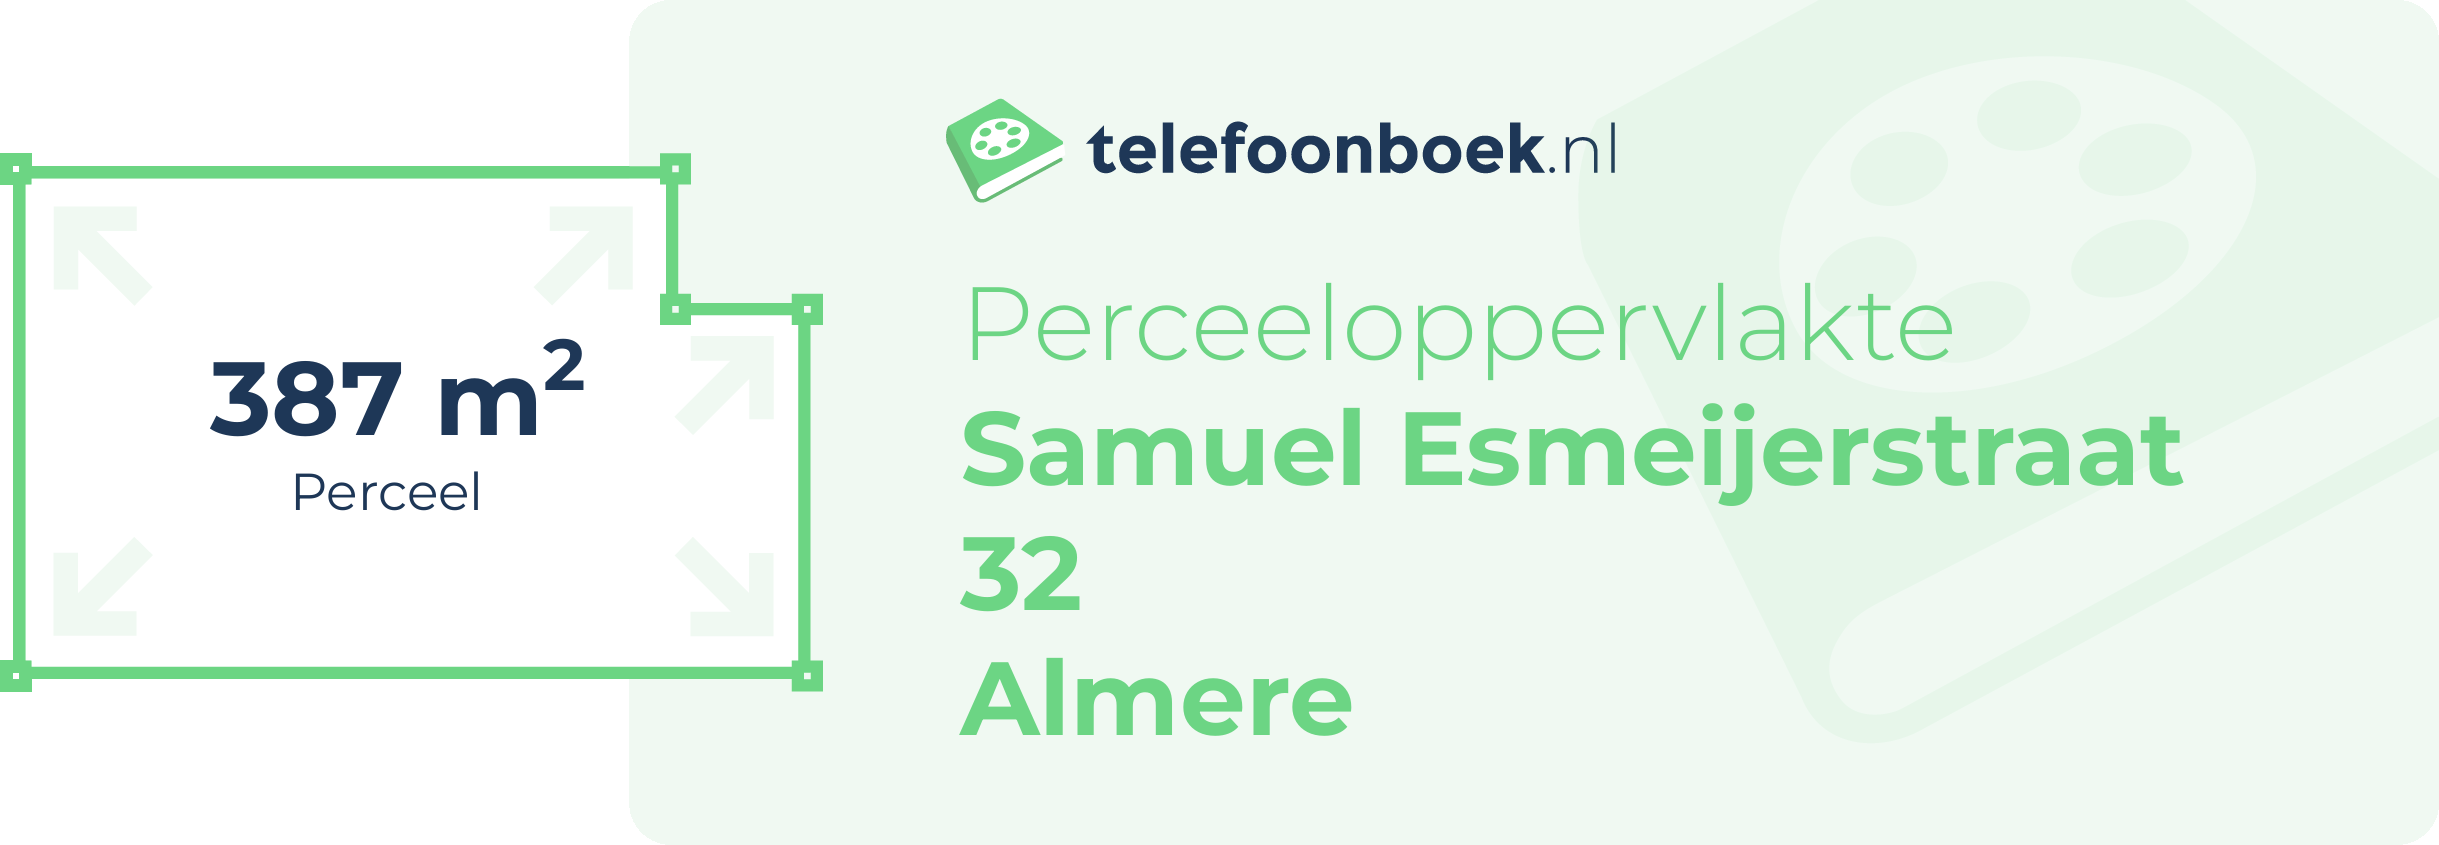 Perceeloppervlakte Samuel Esmeijerstraat 32 Almere